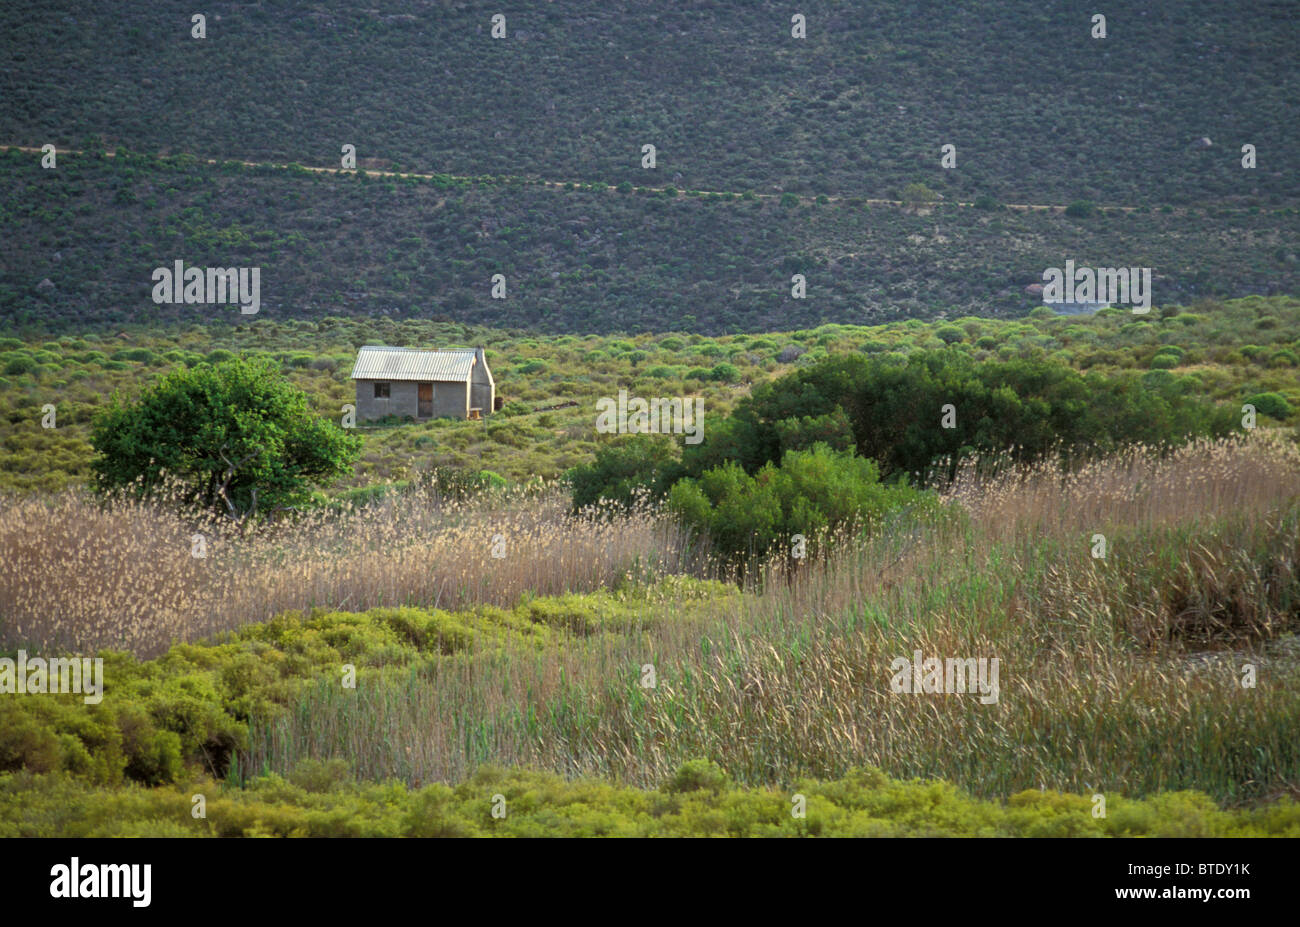 Luftaufnahme einer kleinen isolierten ländlichen Cottage oder Landarbeiter Wohnung Stockfoto